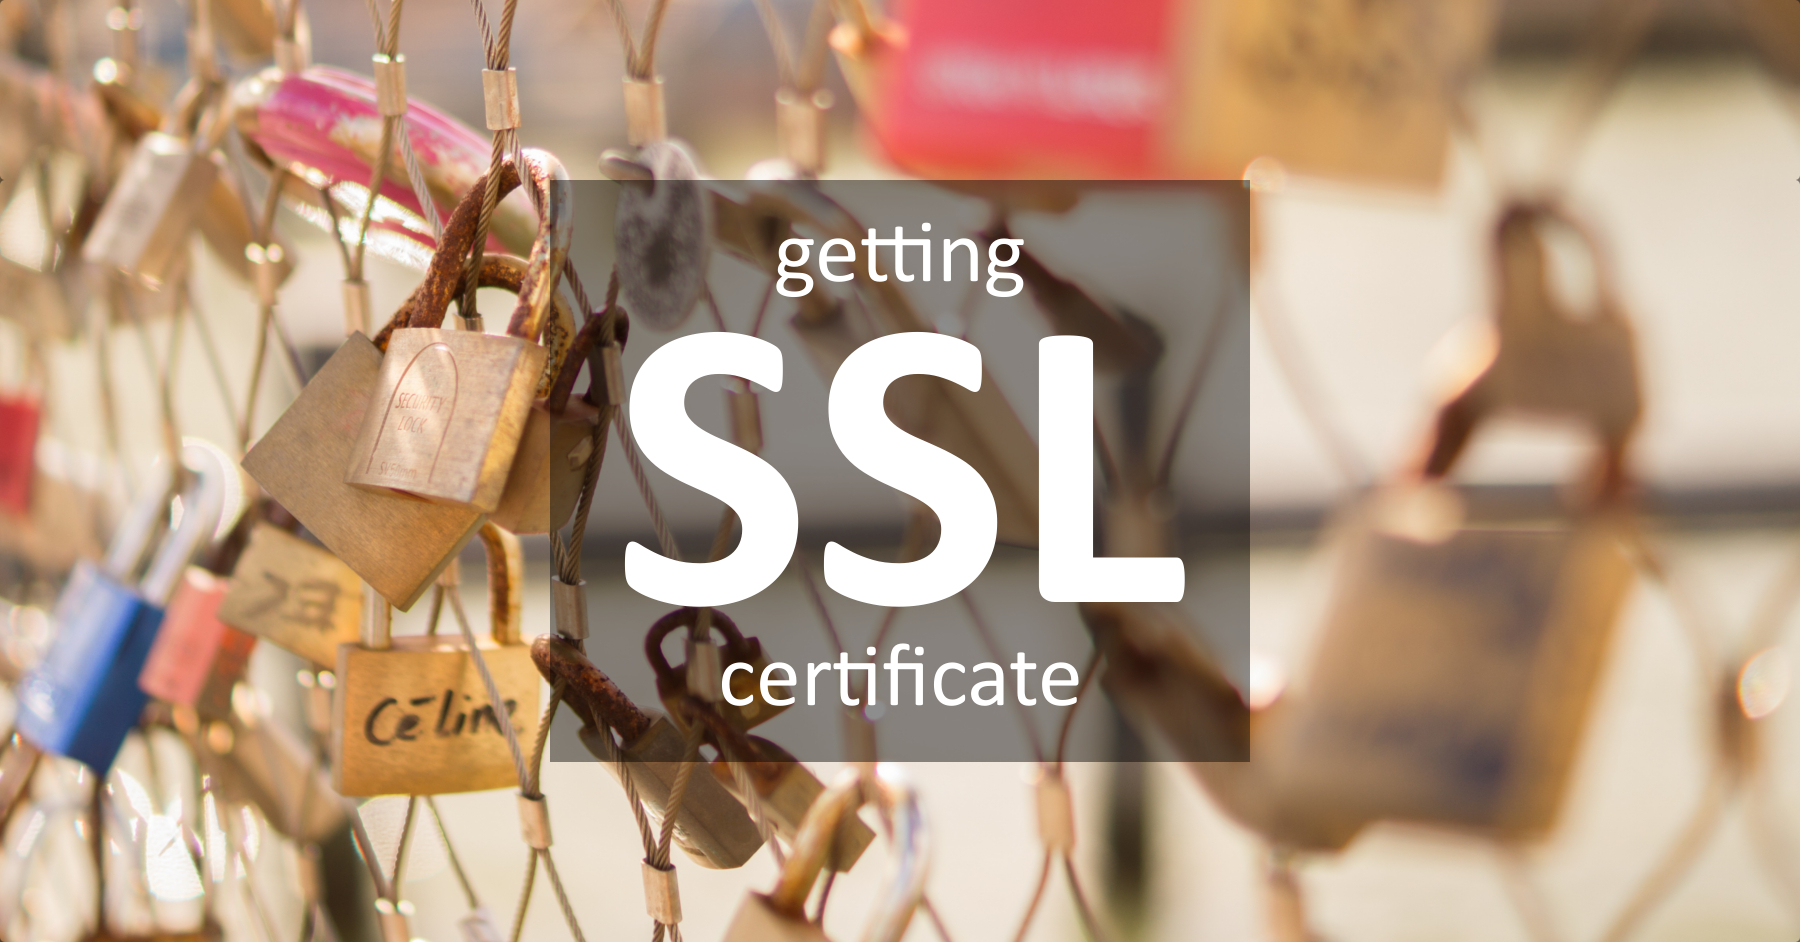 Getting SSL certificate